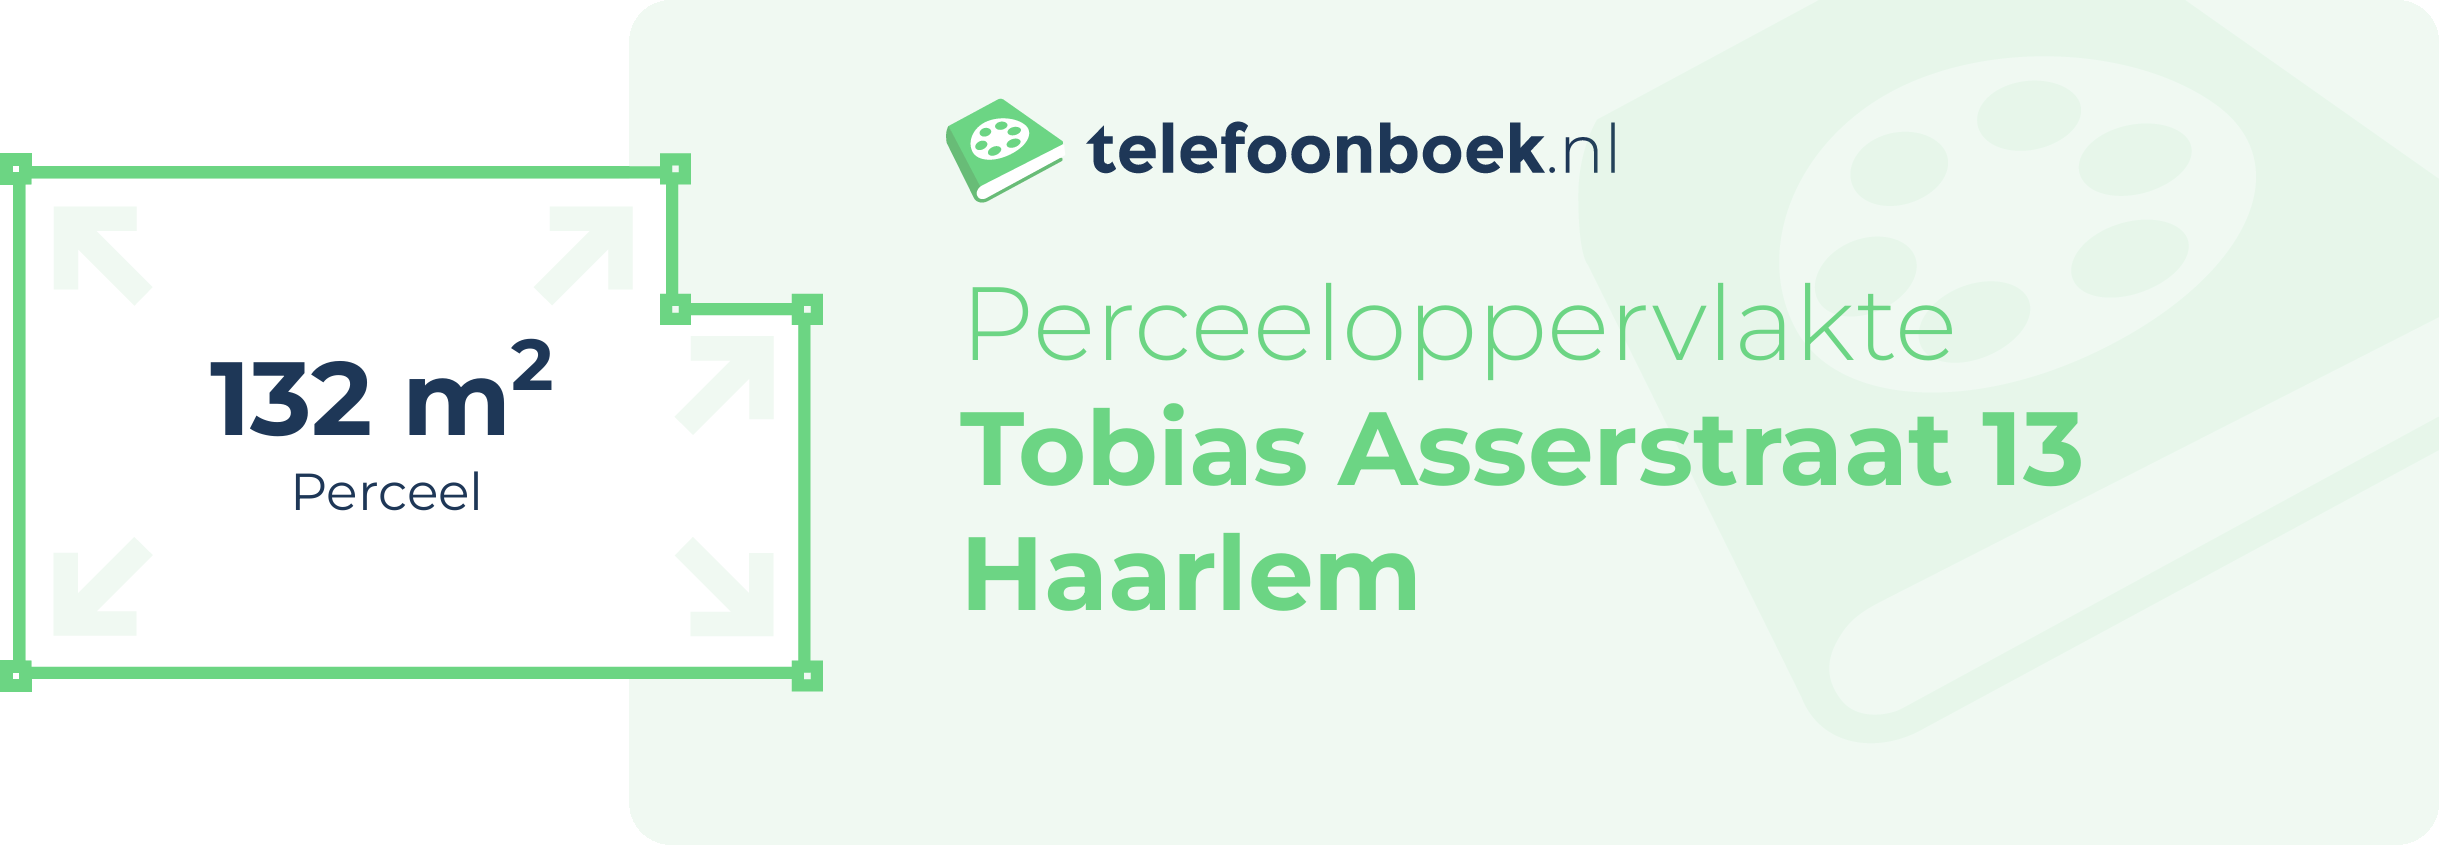 Perceeloppervlakte Tobias Asserstraat 13 Haarlem